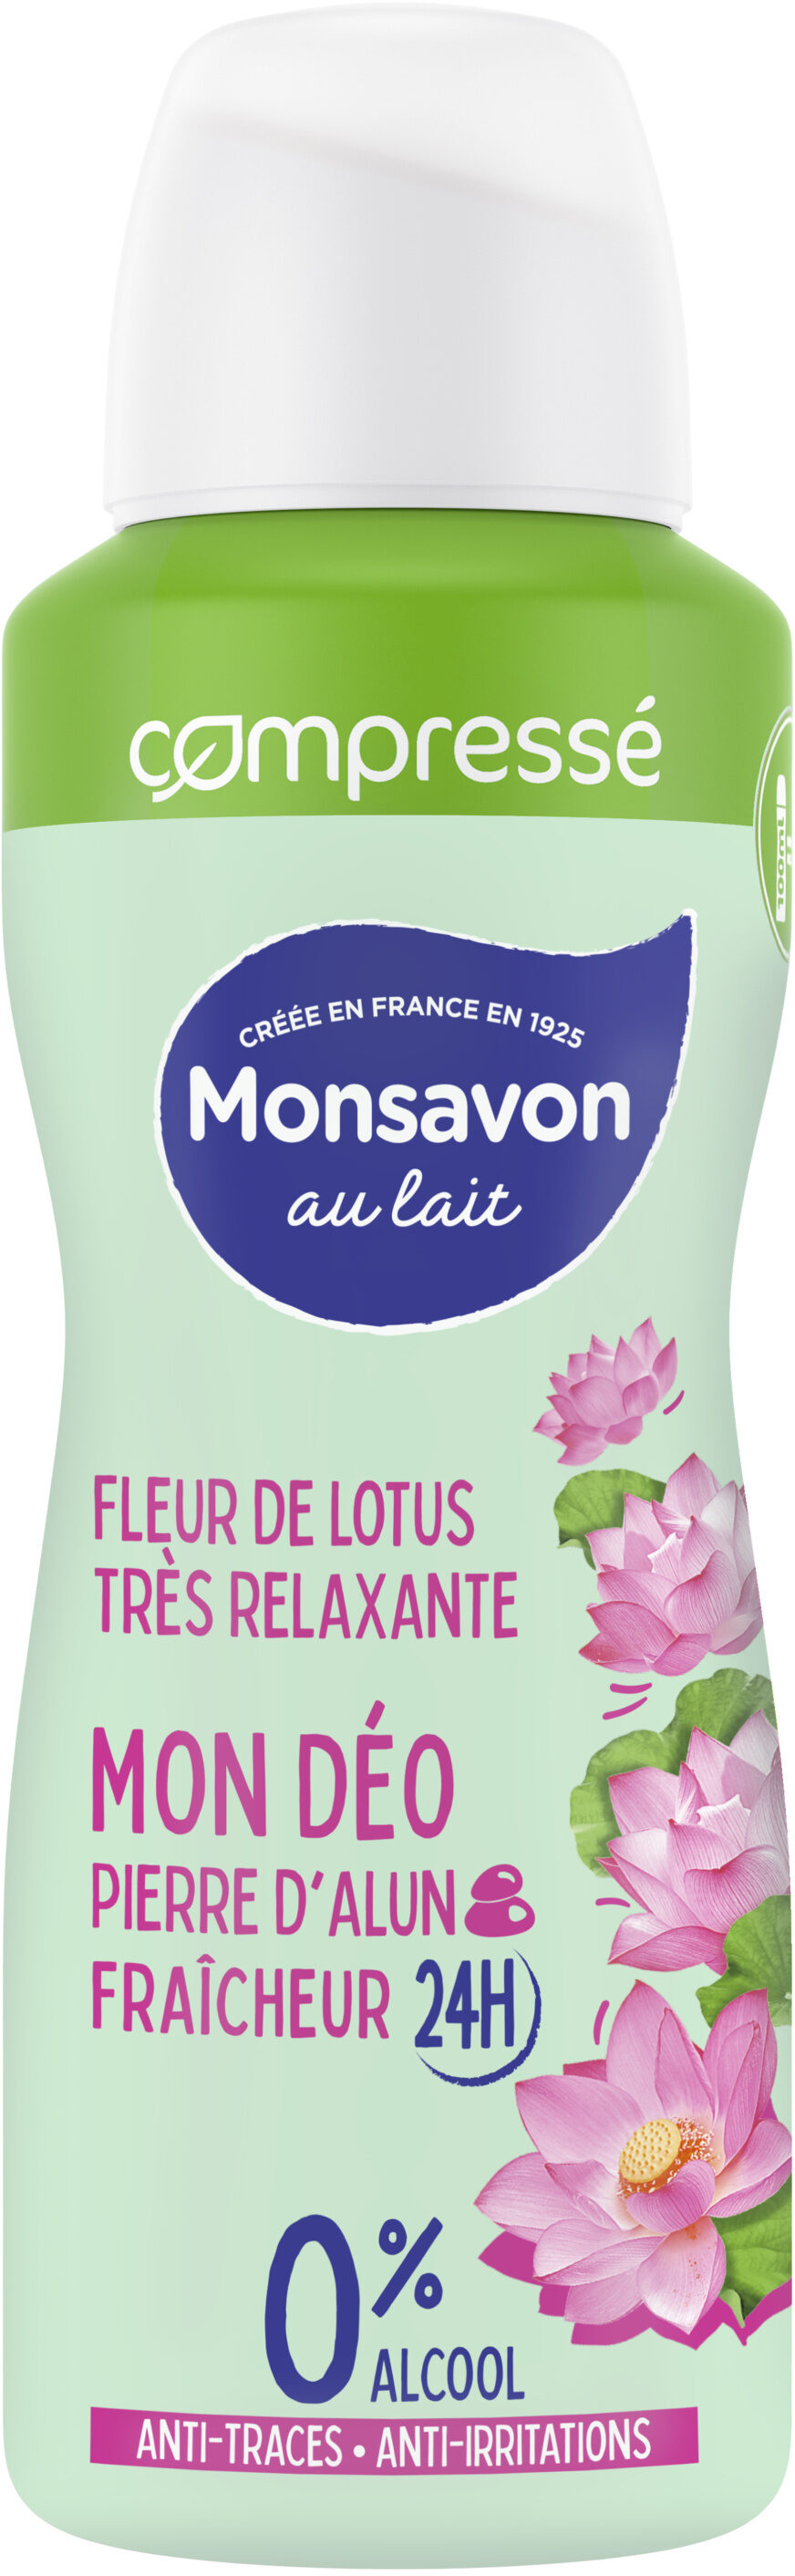 Monsavon Déodorant Femme Spray Compressé Fleur de Lotus Presque Divine 100ml - Product - fr